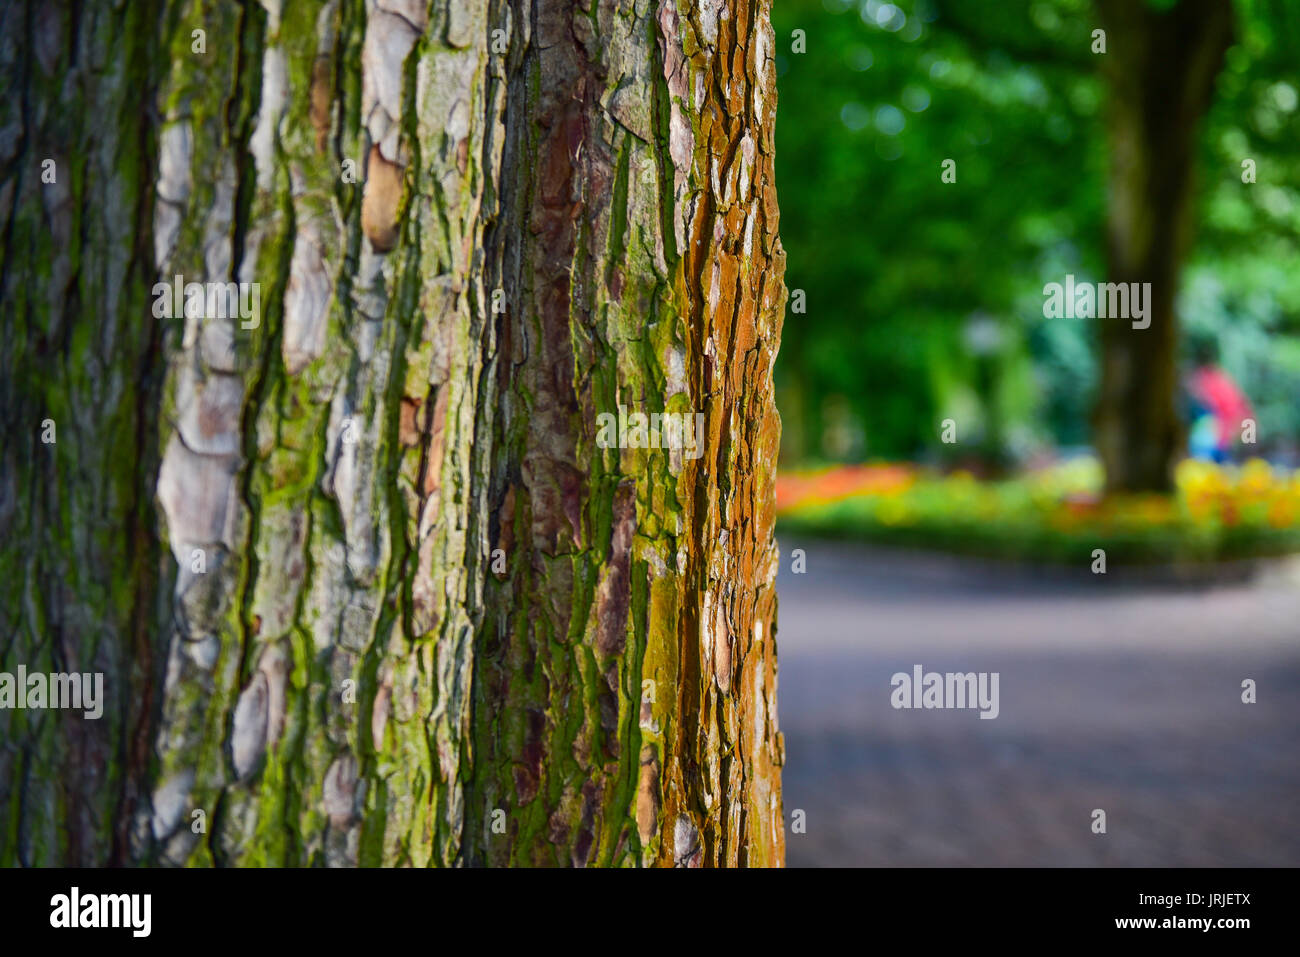 tree bark in a park Stock Photo